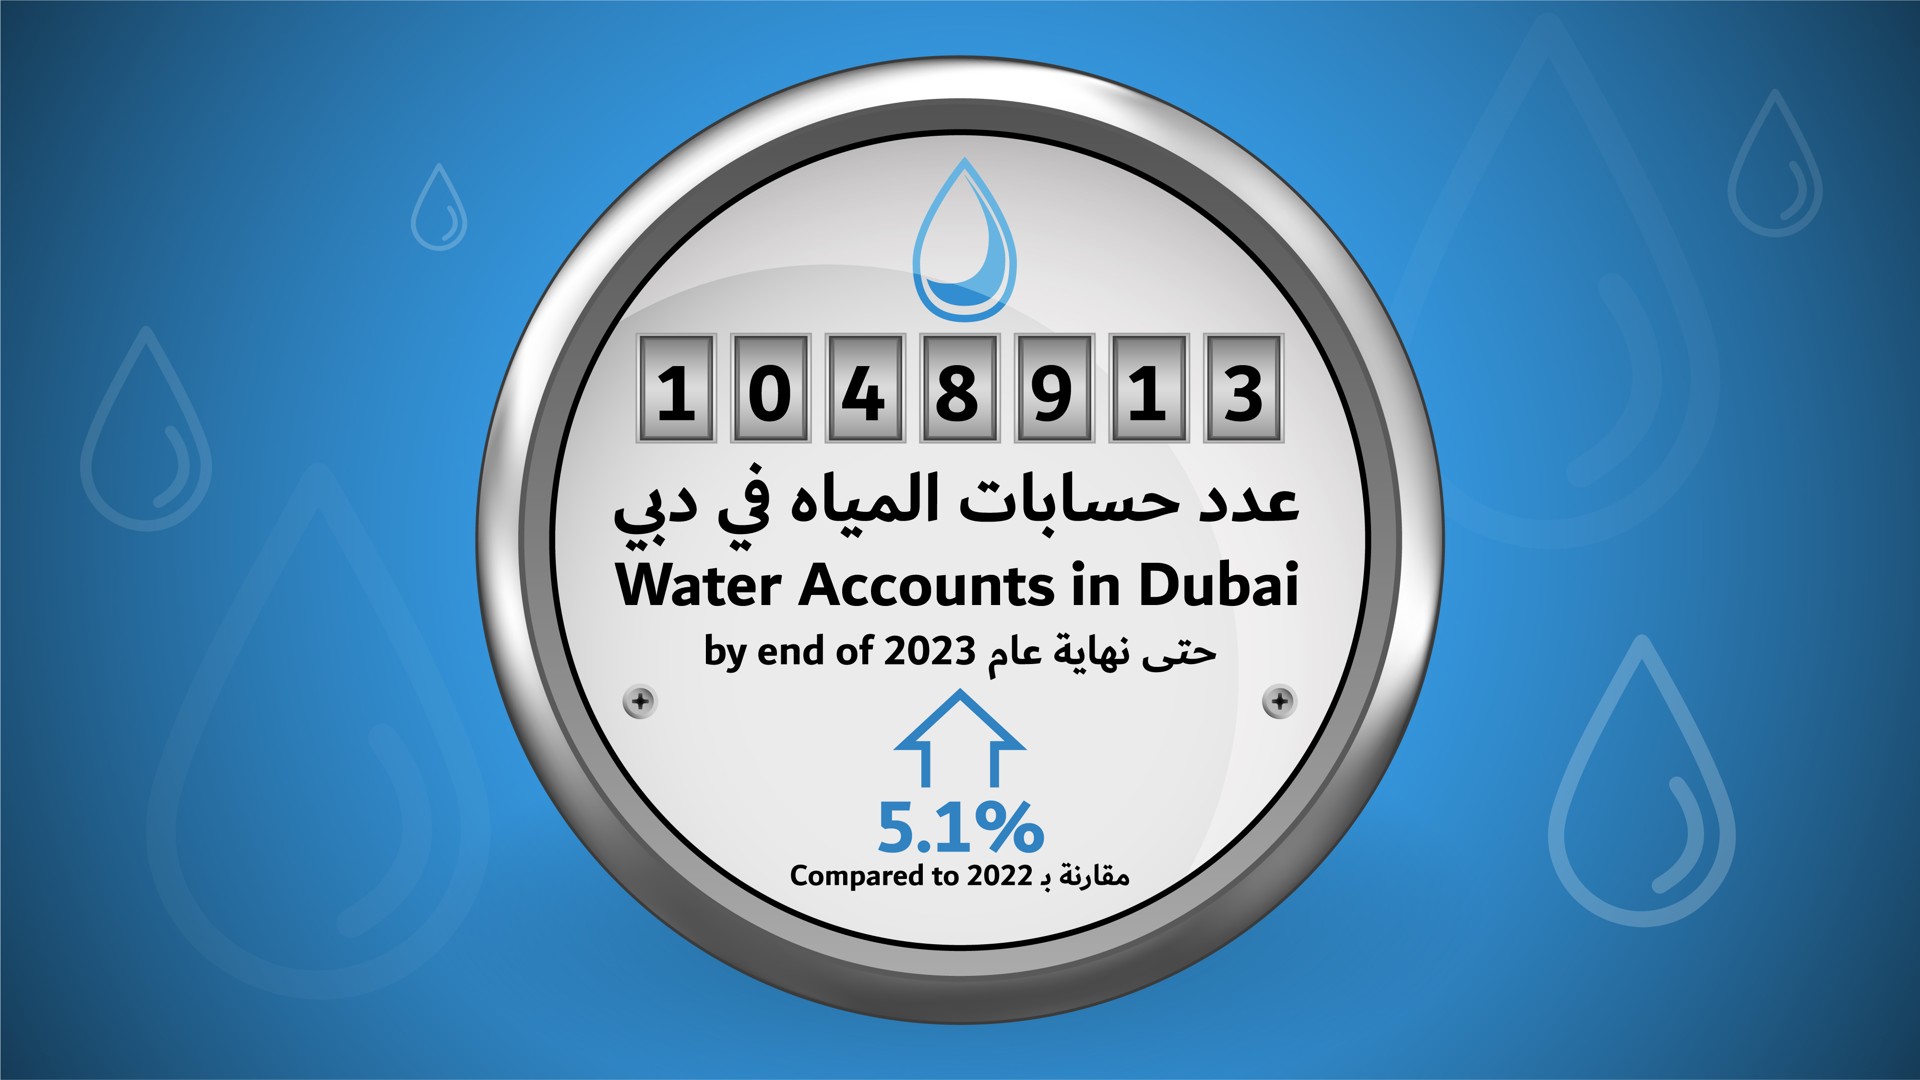 فواتير المياه في دبي تصل إلى 1,048,913 بنهاية عام 2023 بارتفاع 5.1% مقارنة بعام 2022